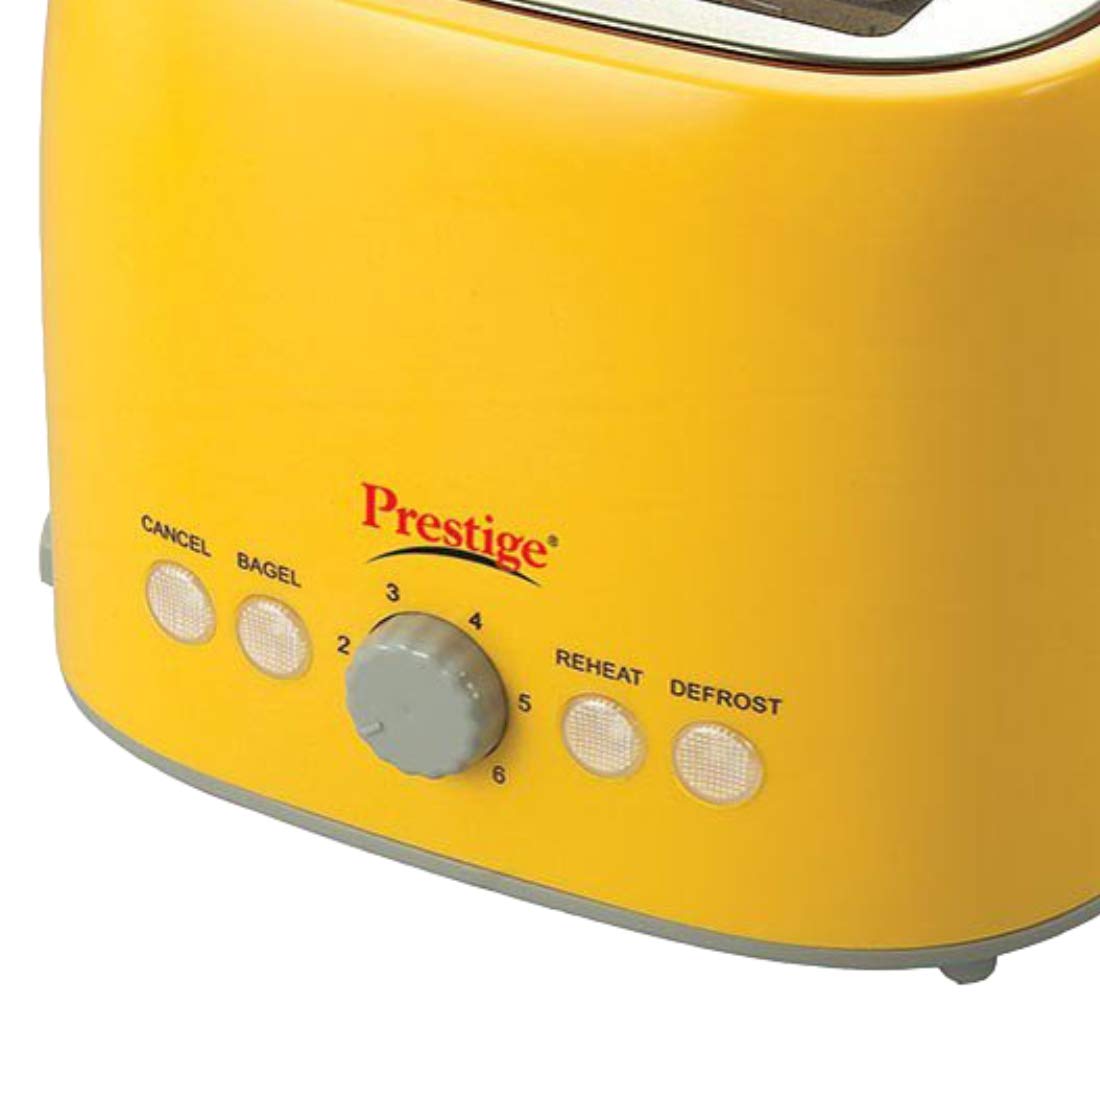 Prestige PPTPKY 850 Watt Pop-Up Toaster (Yellow) | Must for Healthy breakfast | Buy from www.rasoishop.com | Prestige